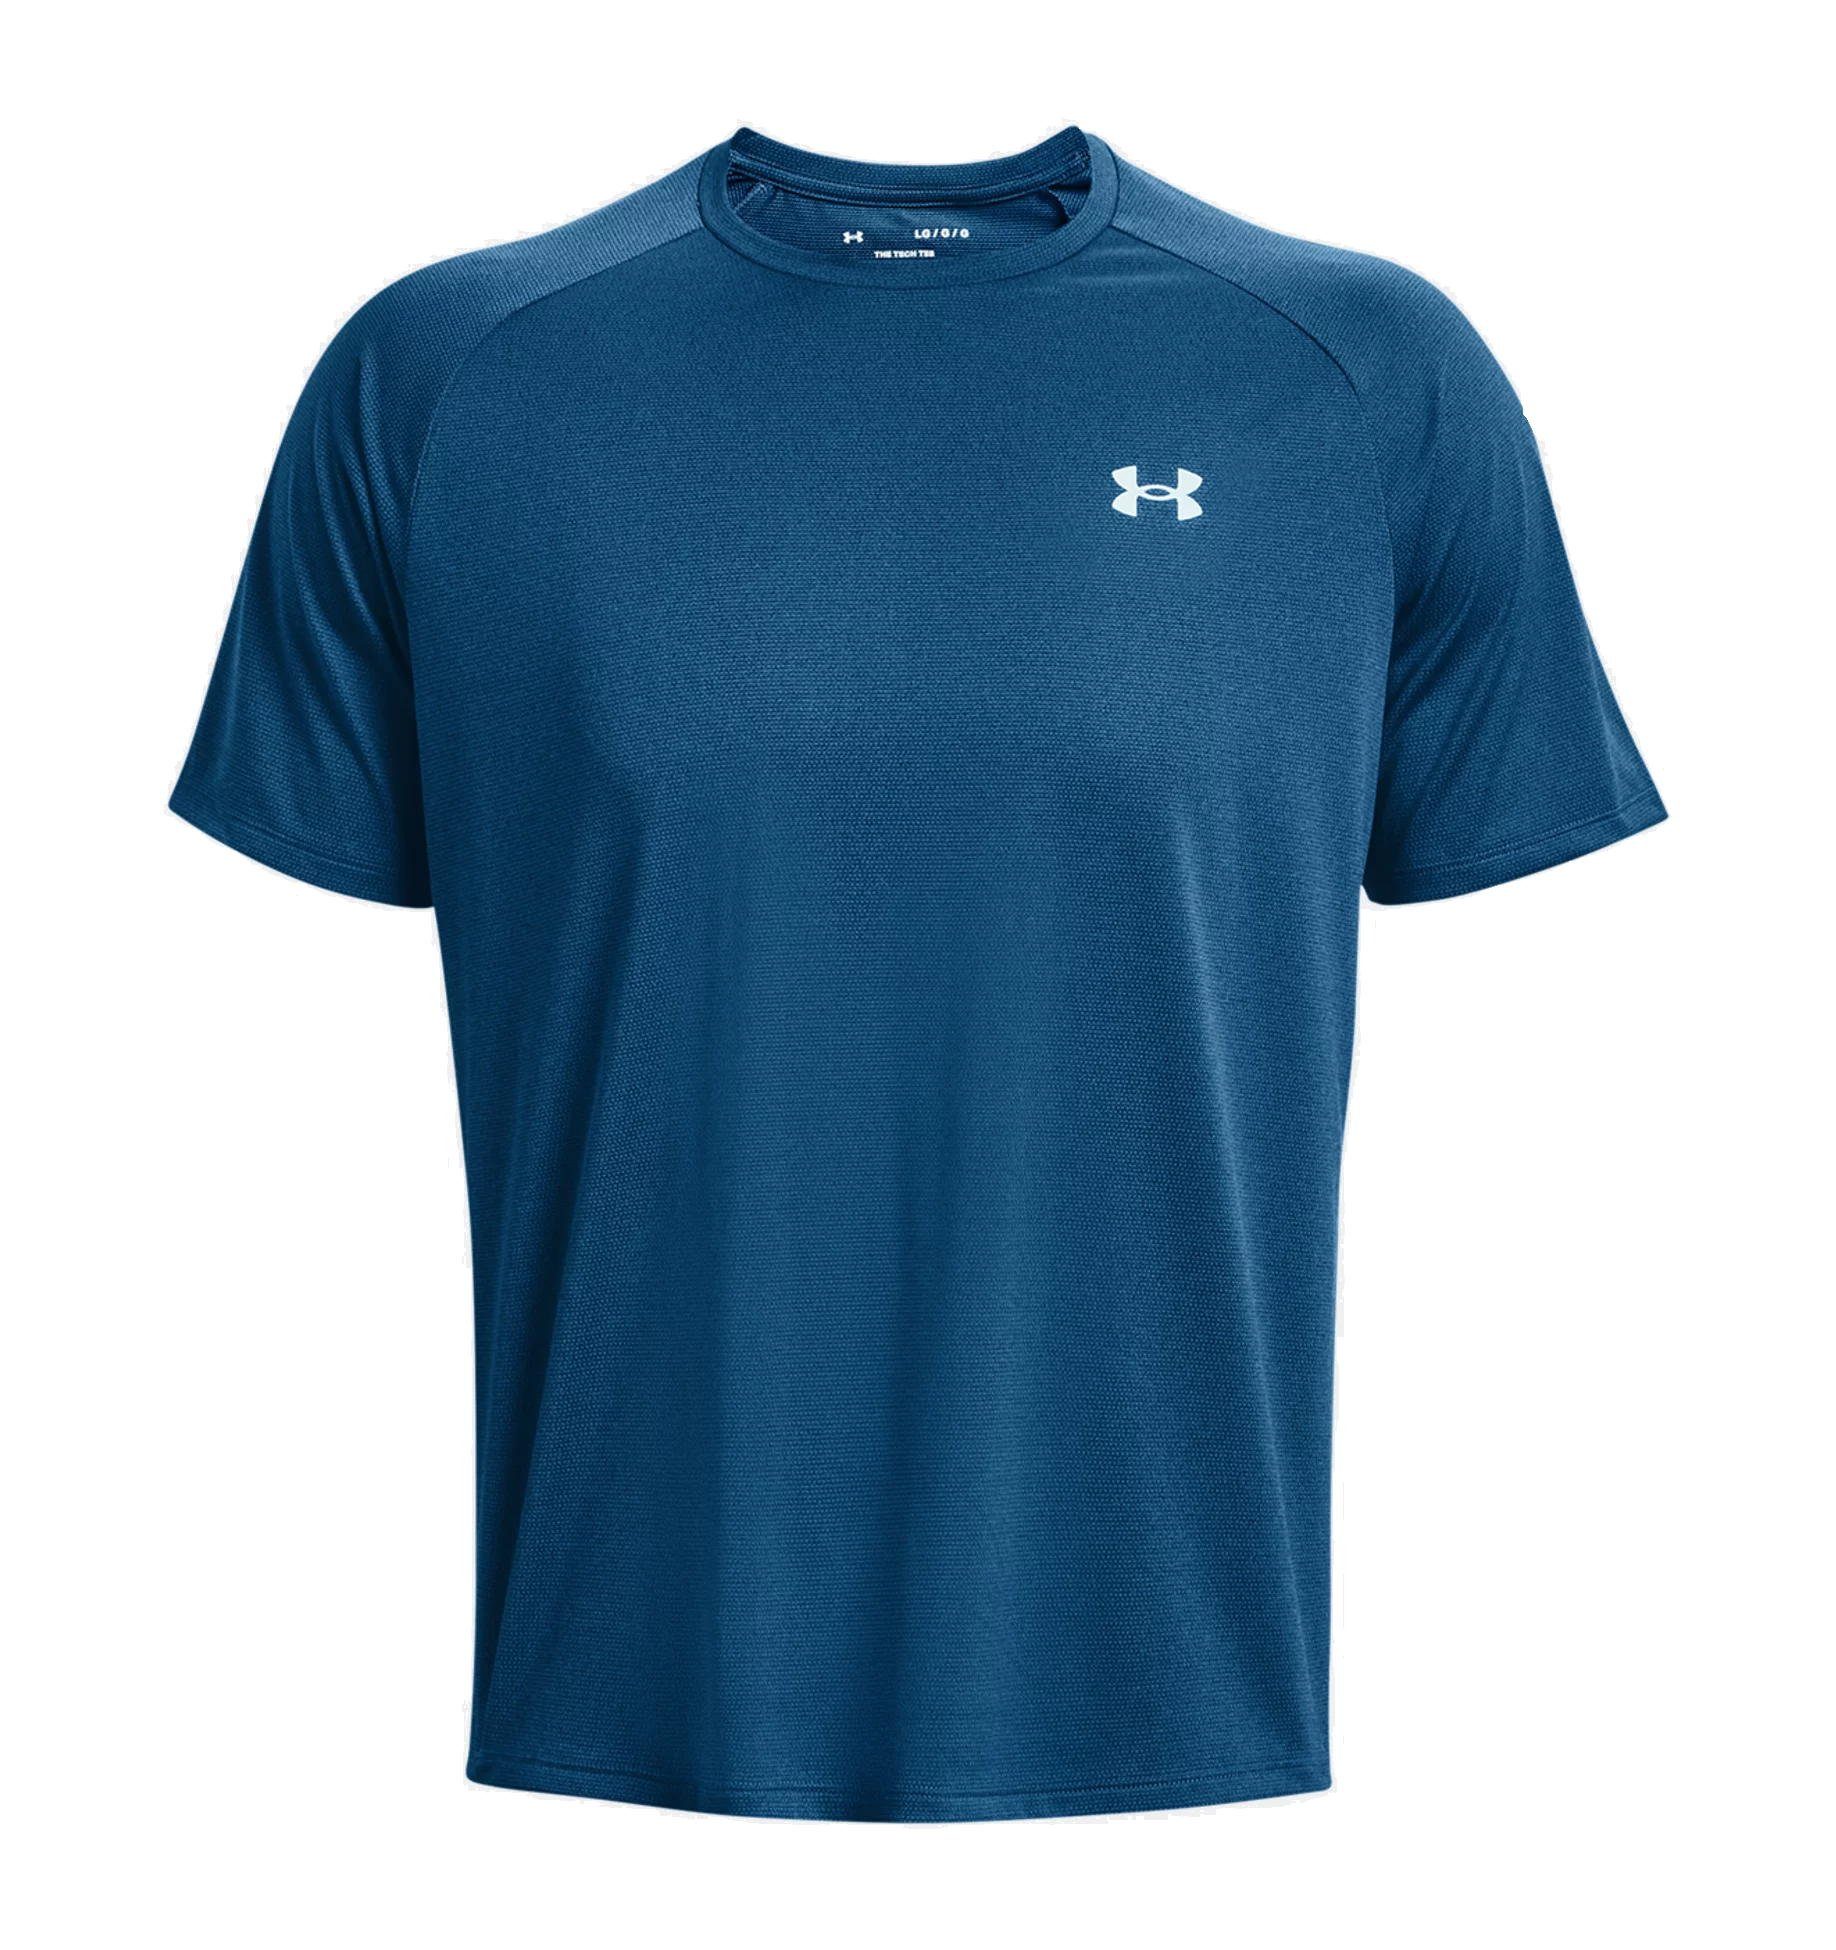 Under Armour® T-Shirt Blau 2.0 Funktionsshirt Tech Oberteil T-Shirt - Novelty Kurzarm Herren